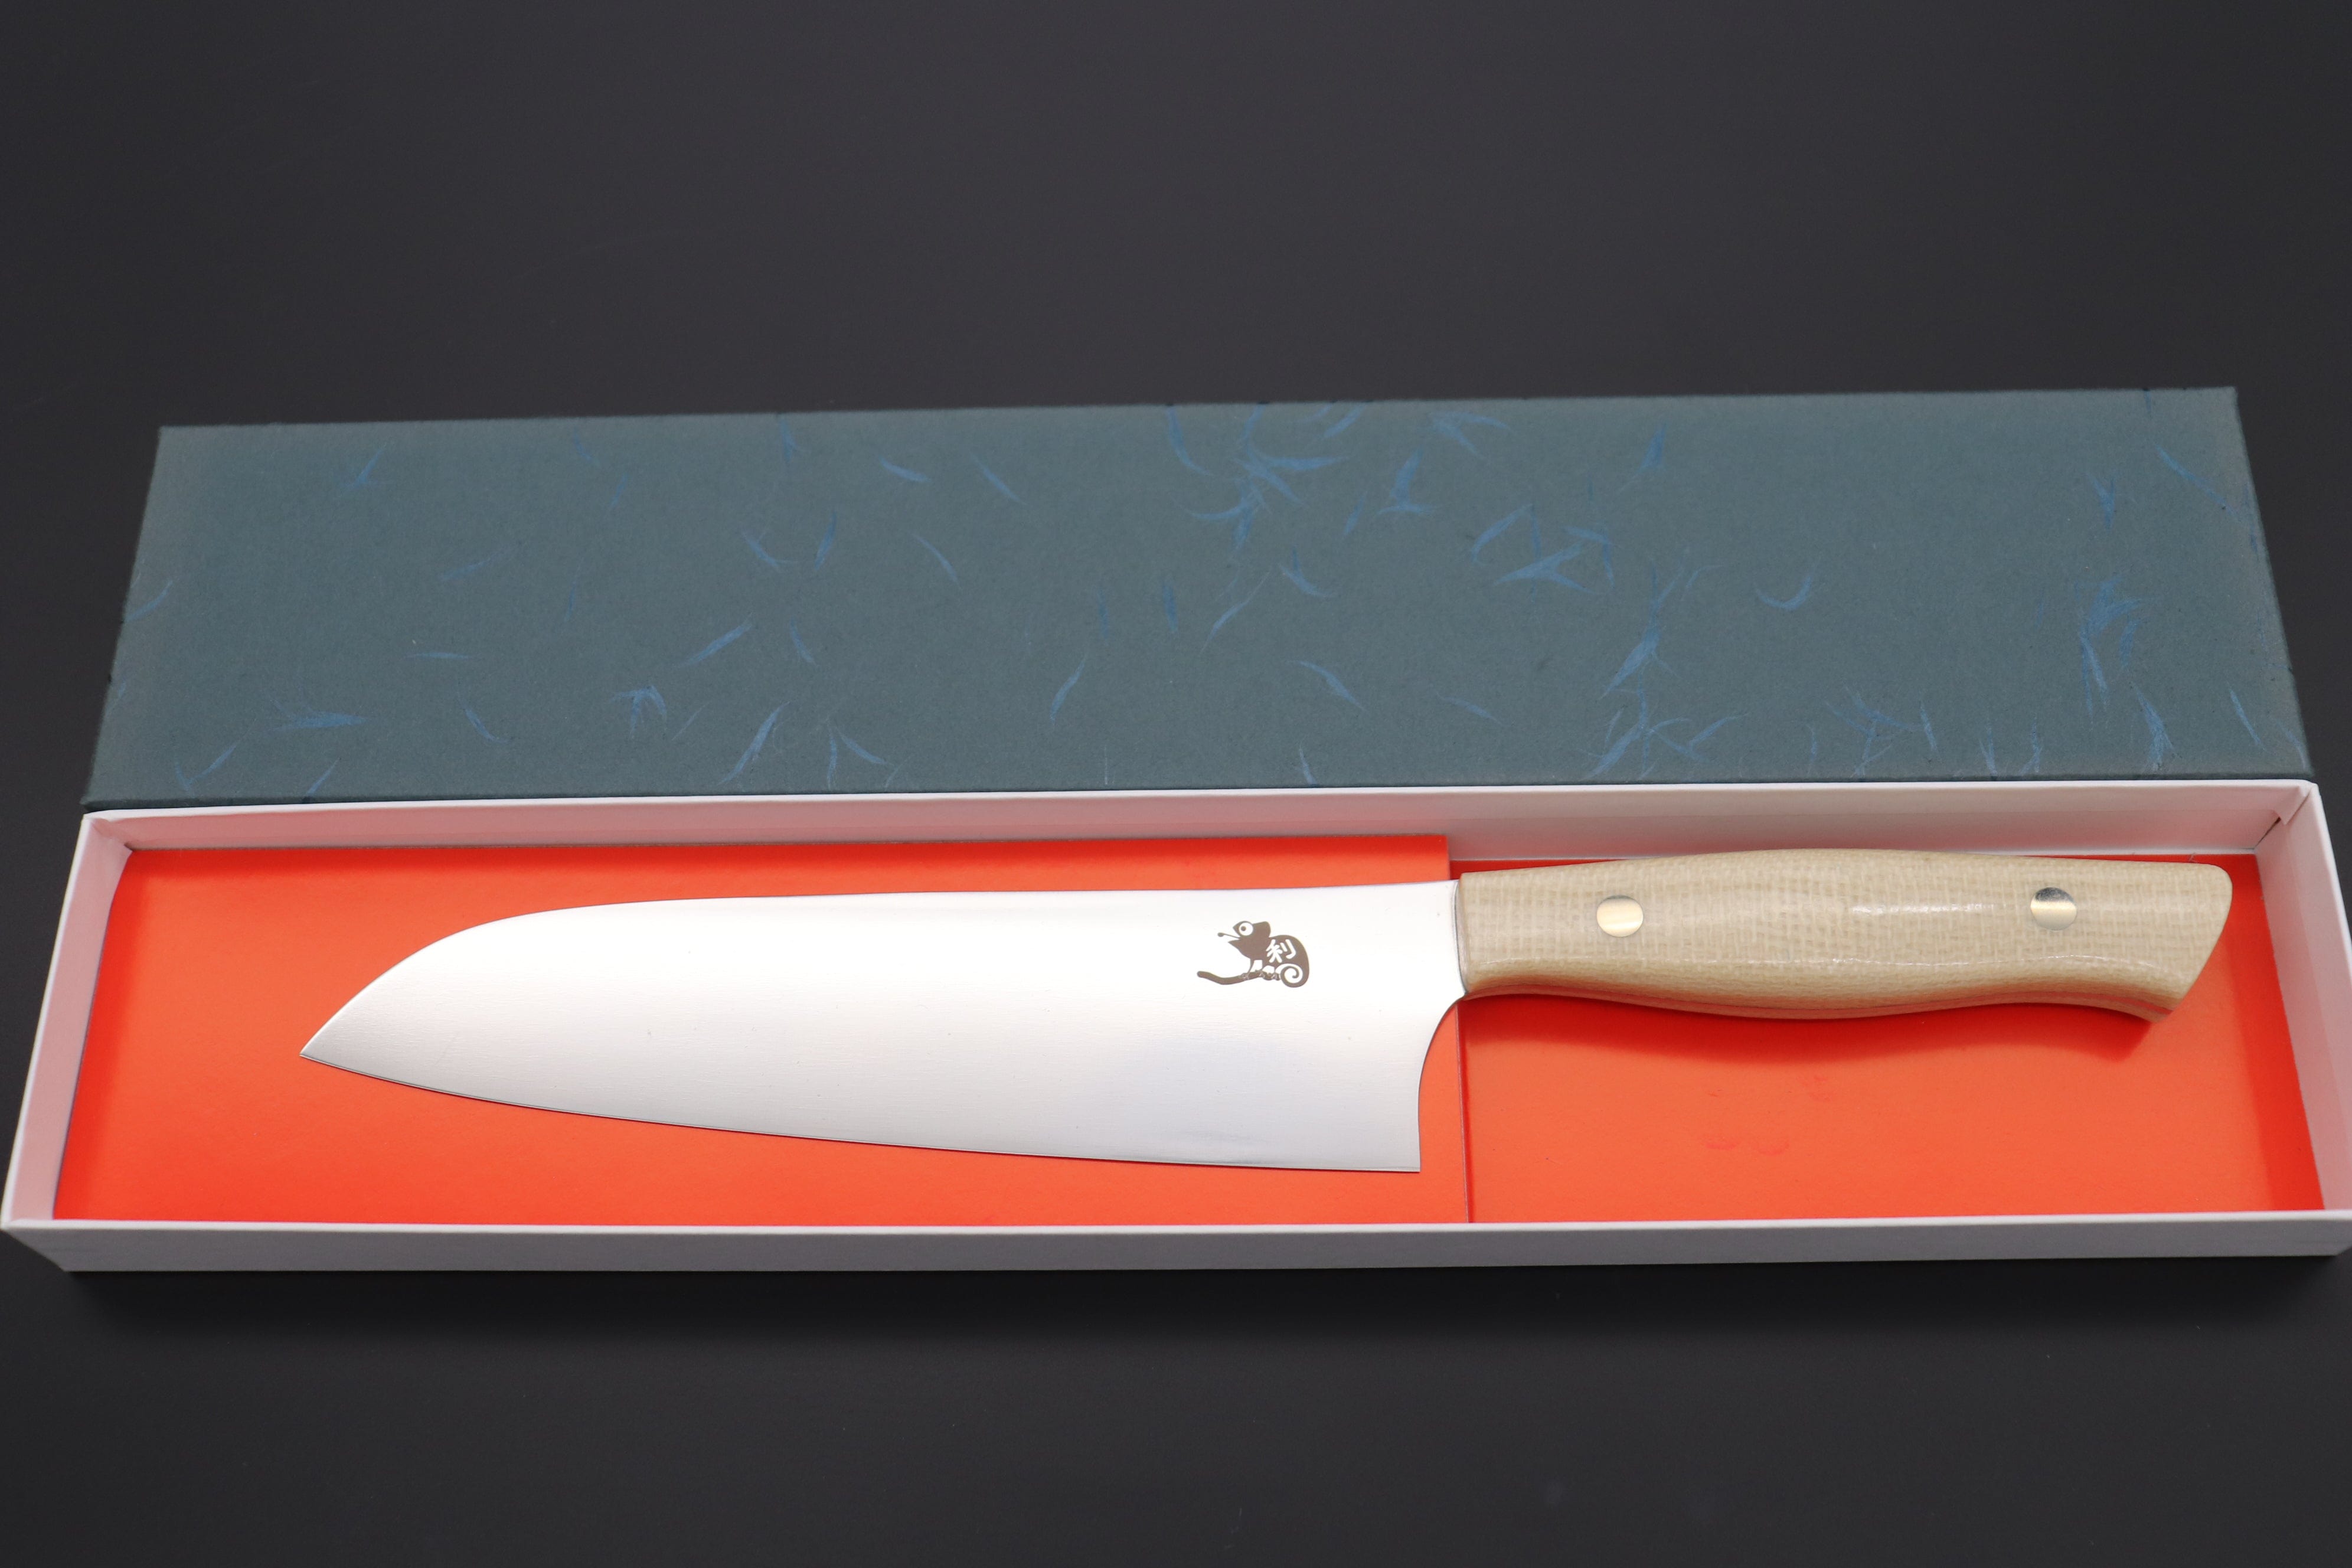 https://japanesechefsknife.com/cdn/shop/files/others-santoku-toshiyuki-takahashi-custom-kitchen-knife-tt-15-santoku-175mm-6-8-inch-43013155488027.jpg?v=1696222484